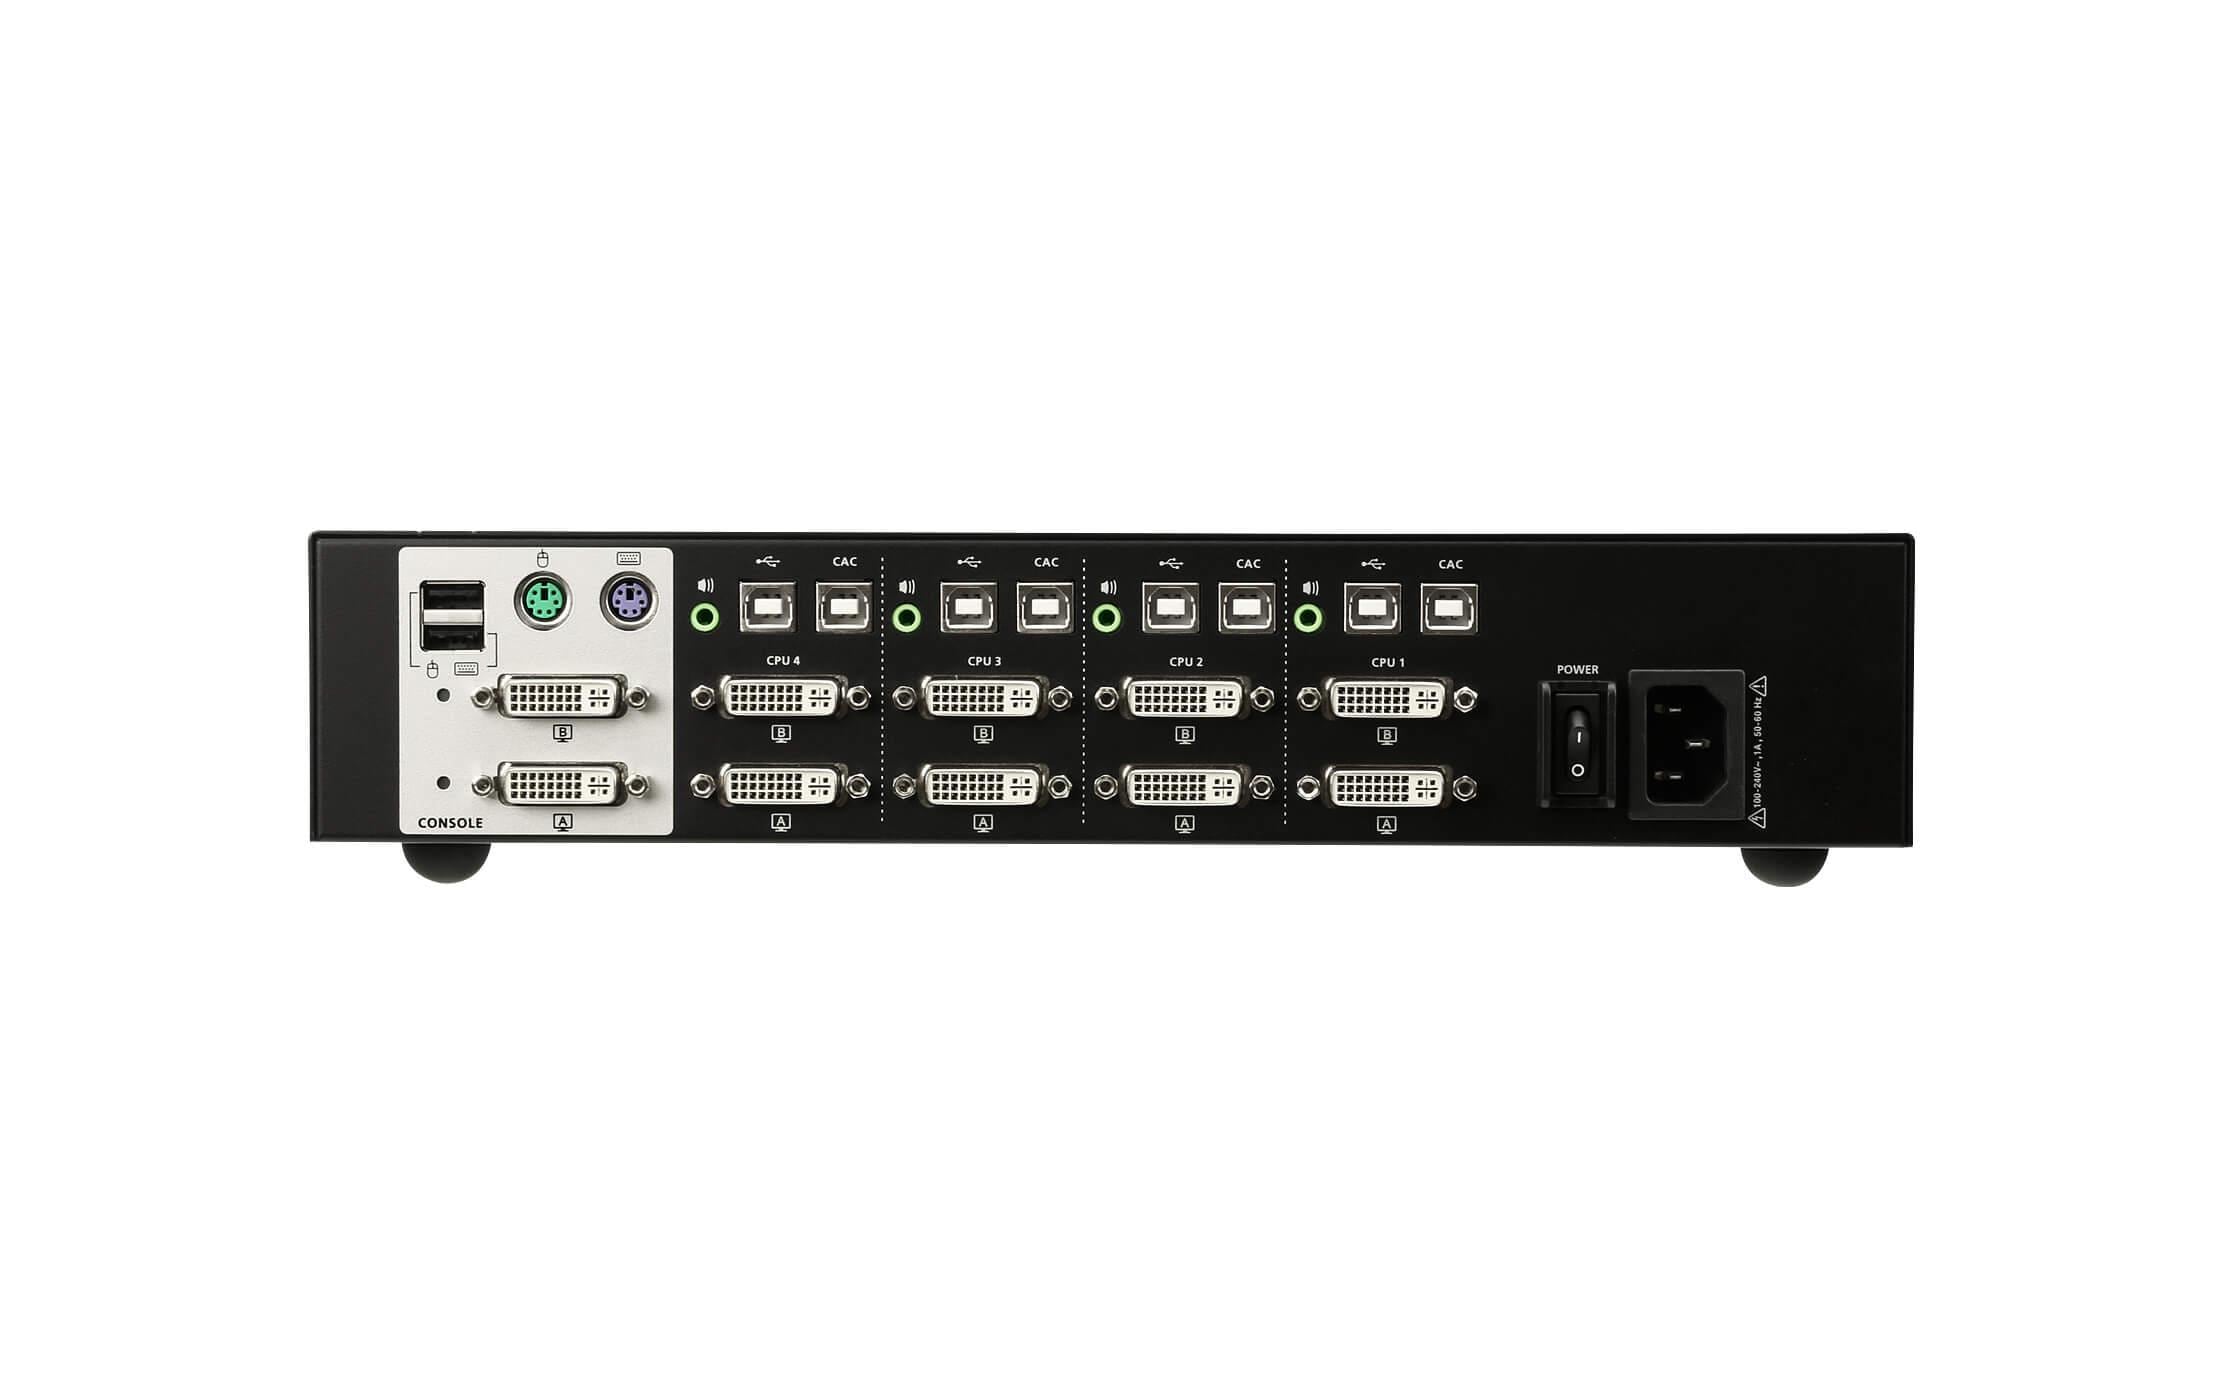 Aten KVM Switch CS1144D 4K 30 Hz